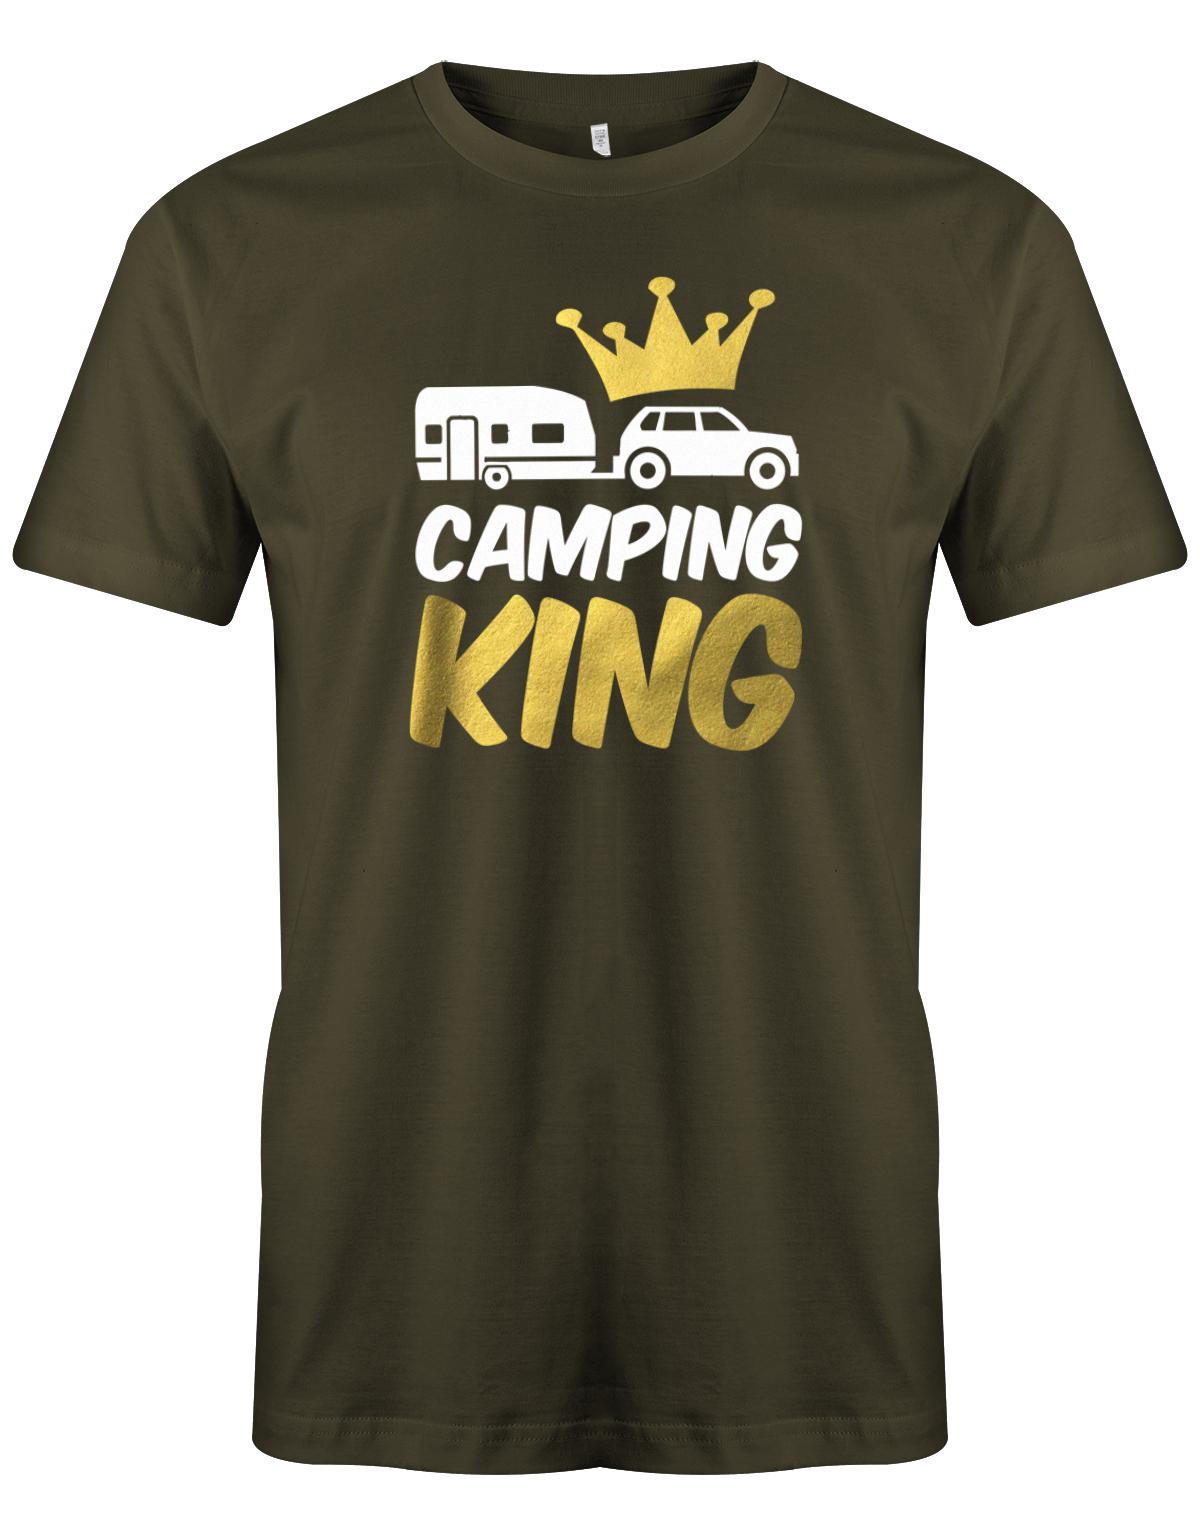 Camping-King-Herren-Shirt-Camper-army